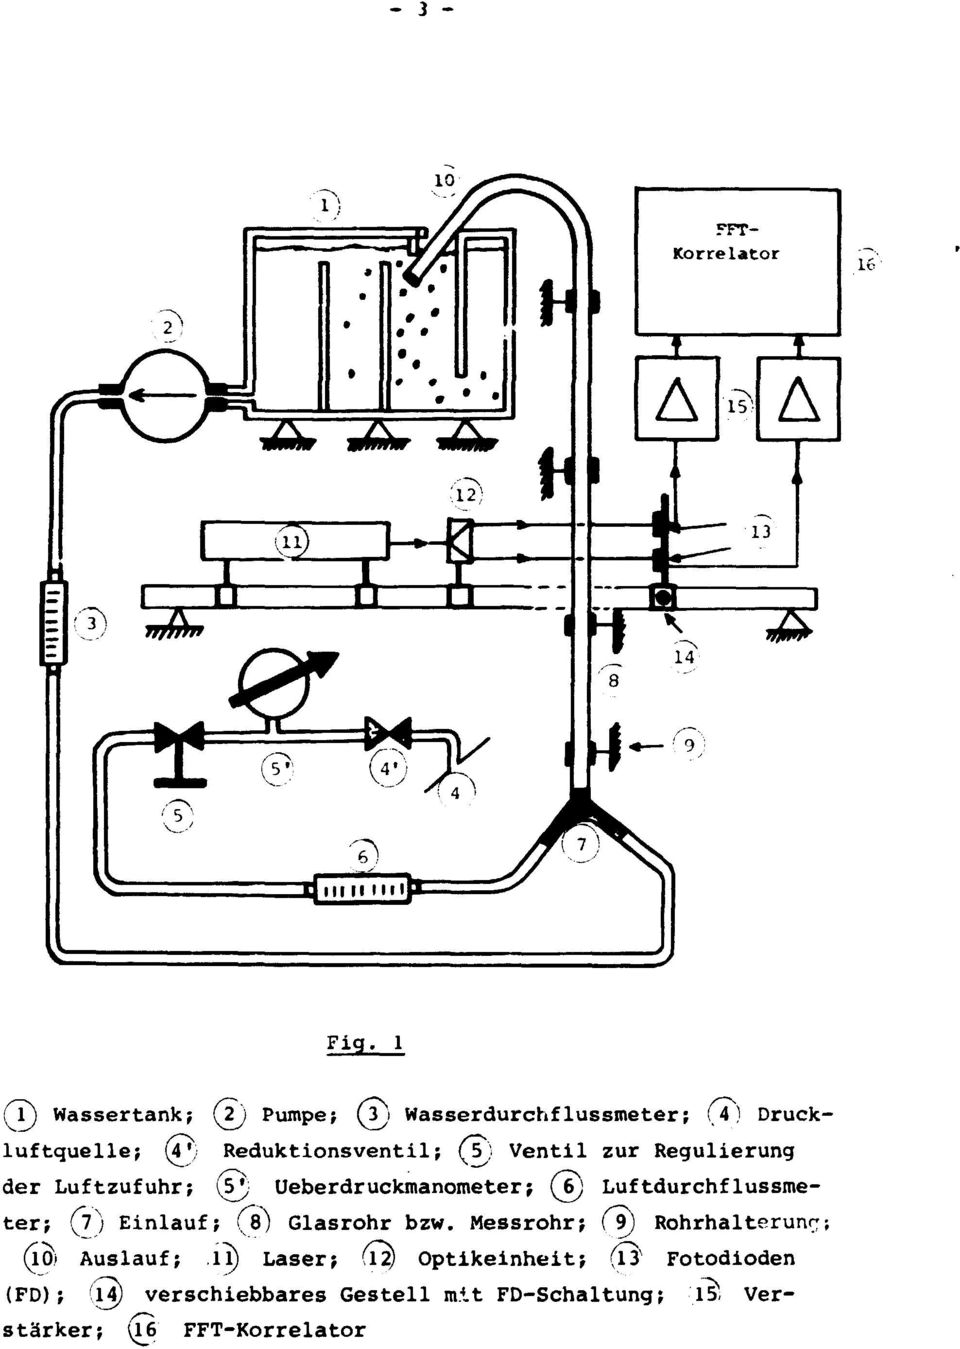 Ventil zur Regulierung der Luftzufuhr; (5J; Ueberdruckmanometer; (T) Luftdurchflussmeter; (j) Einlauf;